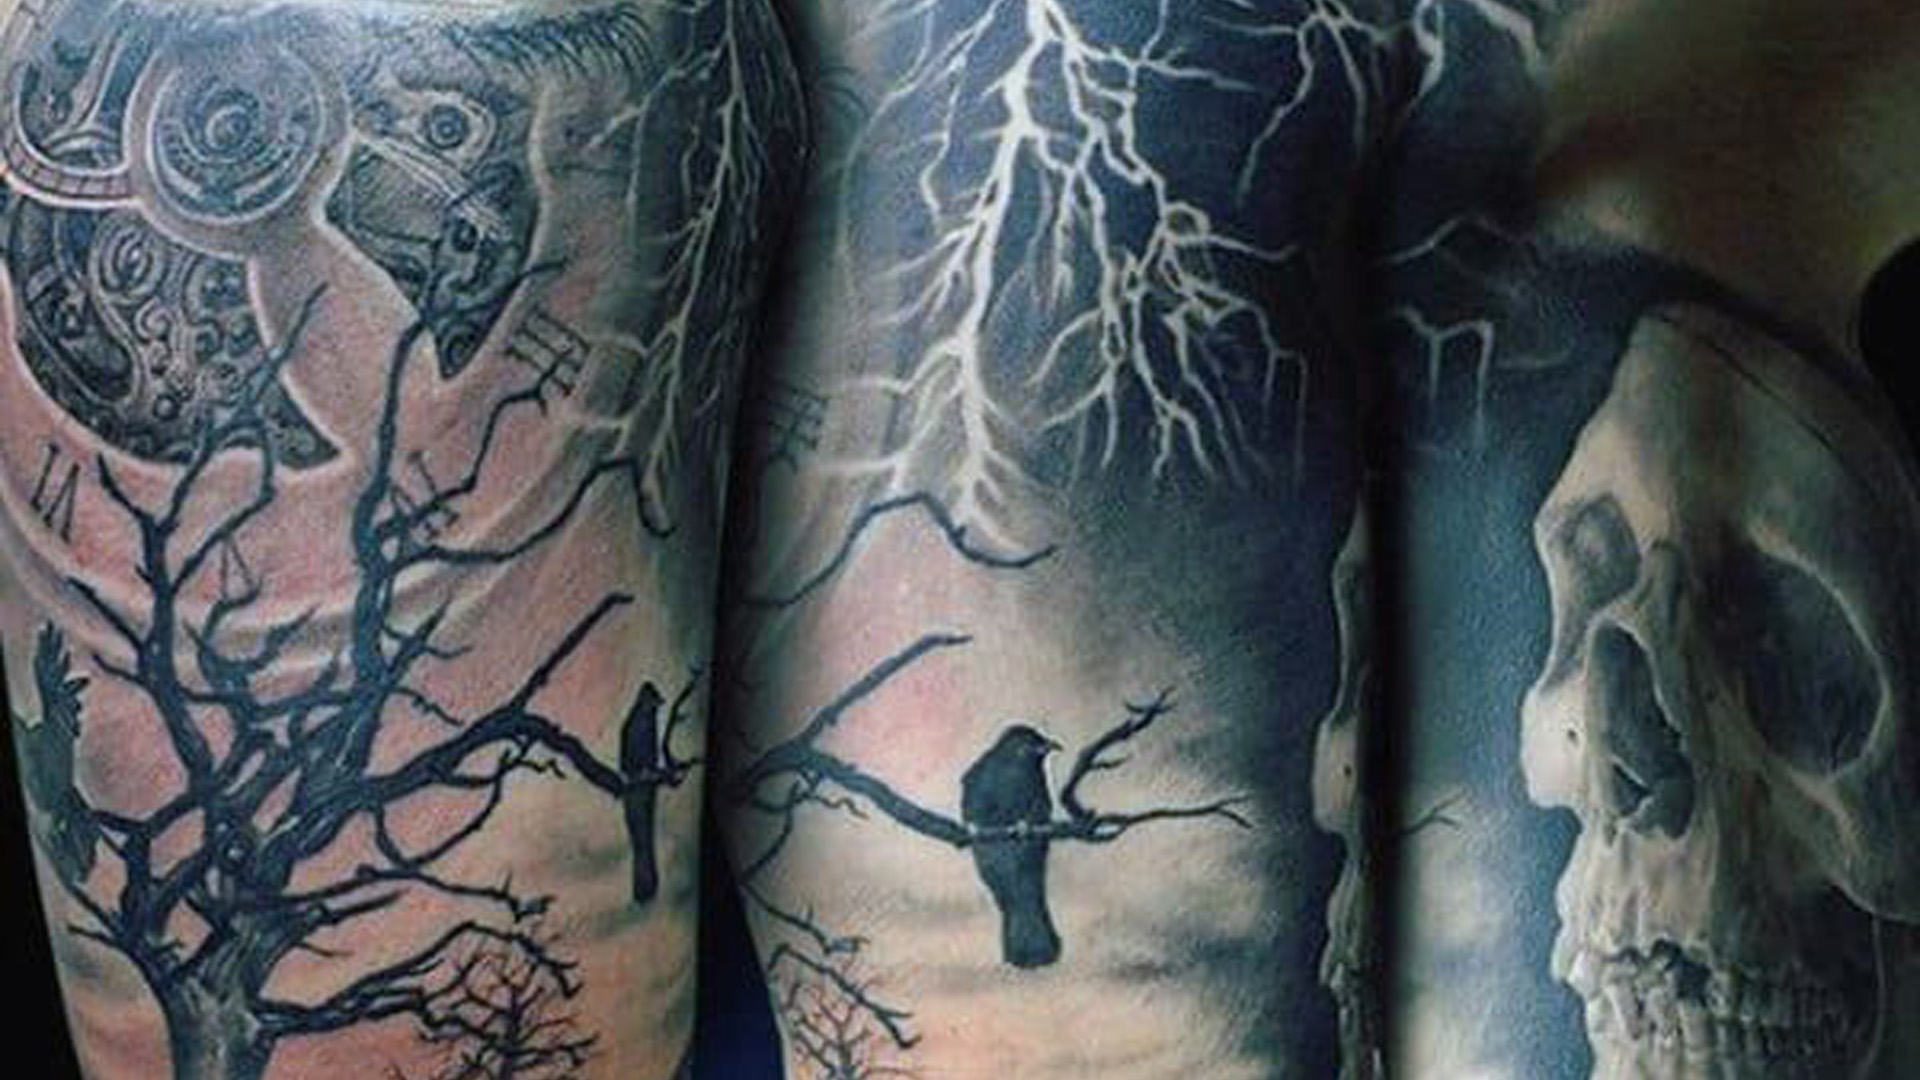 Raven Tattoos Skeleton Lightening Strikes On Upper Arms For Men 2K Tattoos For Men